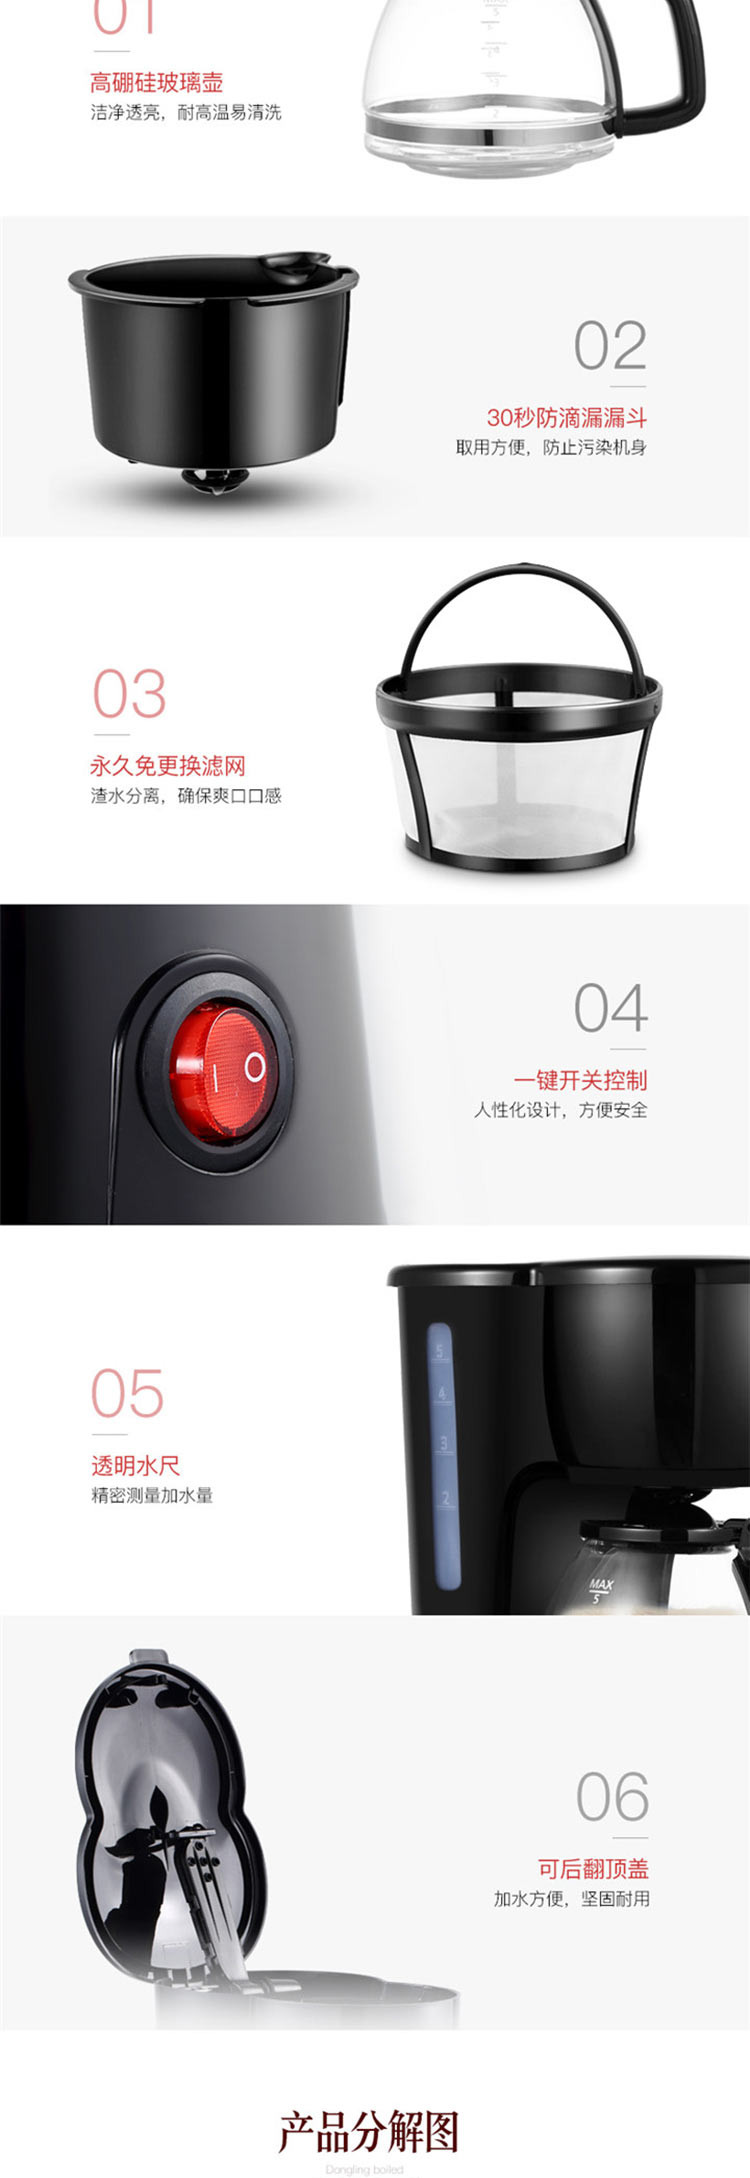 东菱 Donlim 全自动多功能茶饮机 CM-1016 咖啡机煮茶器